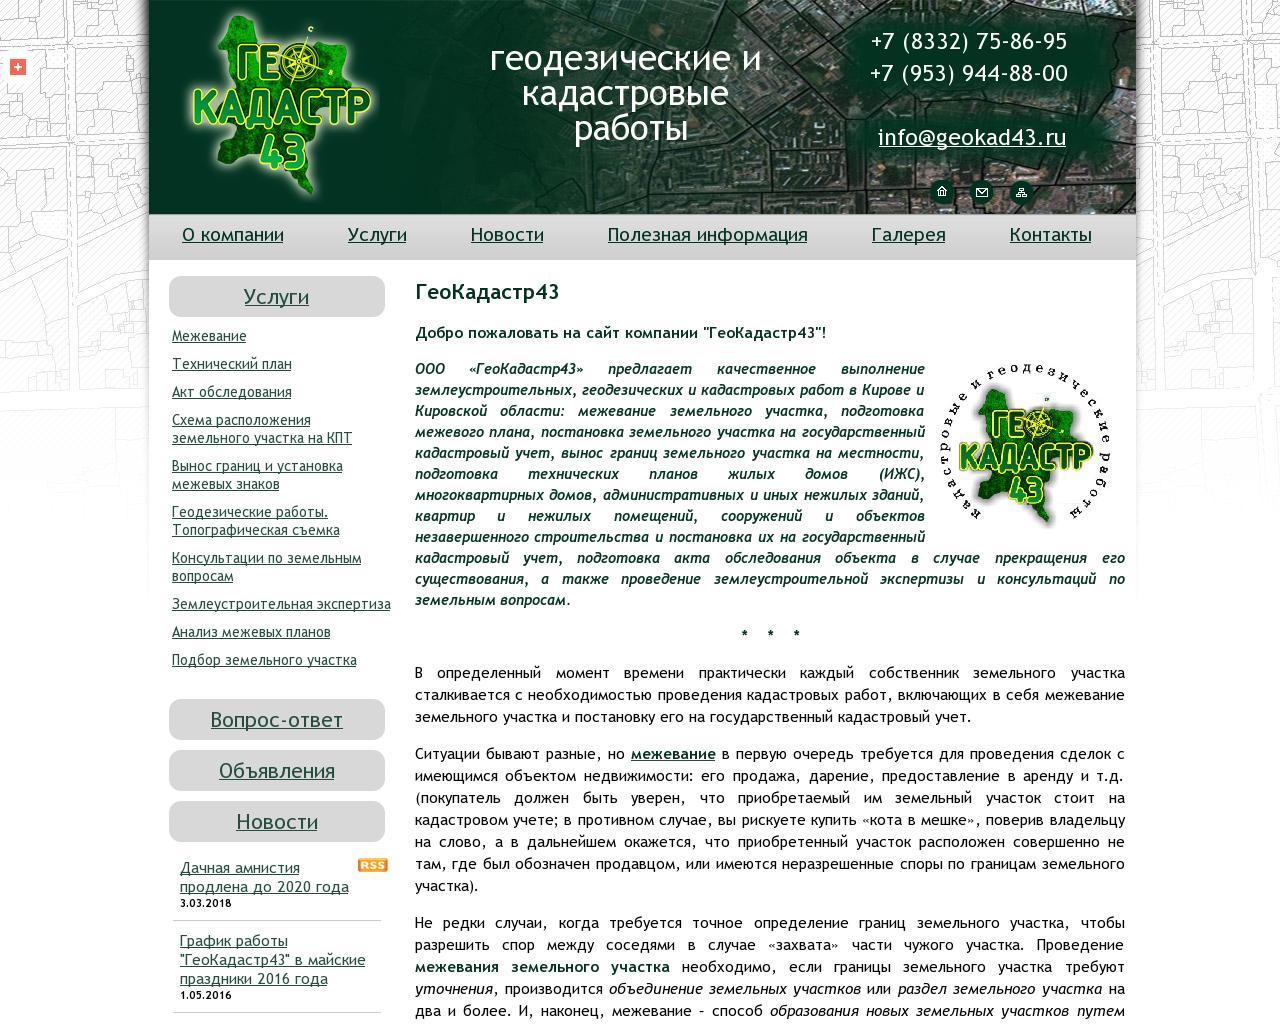 Изображение сайта geokad43.ru в разрешении 1280x1024